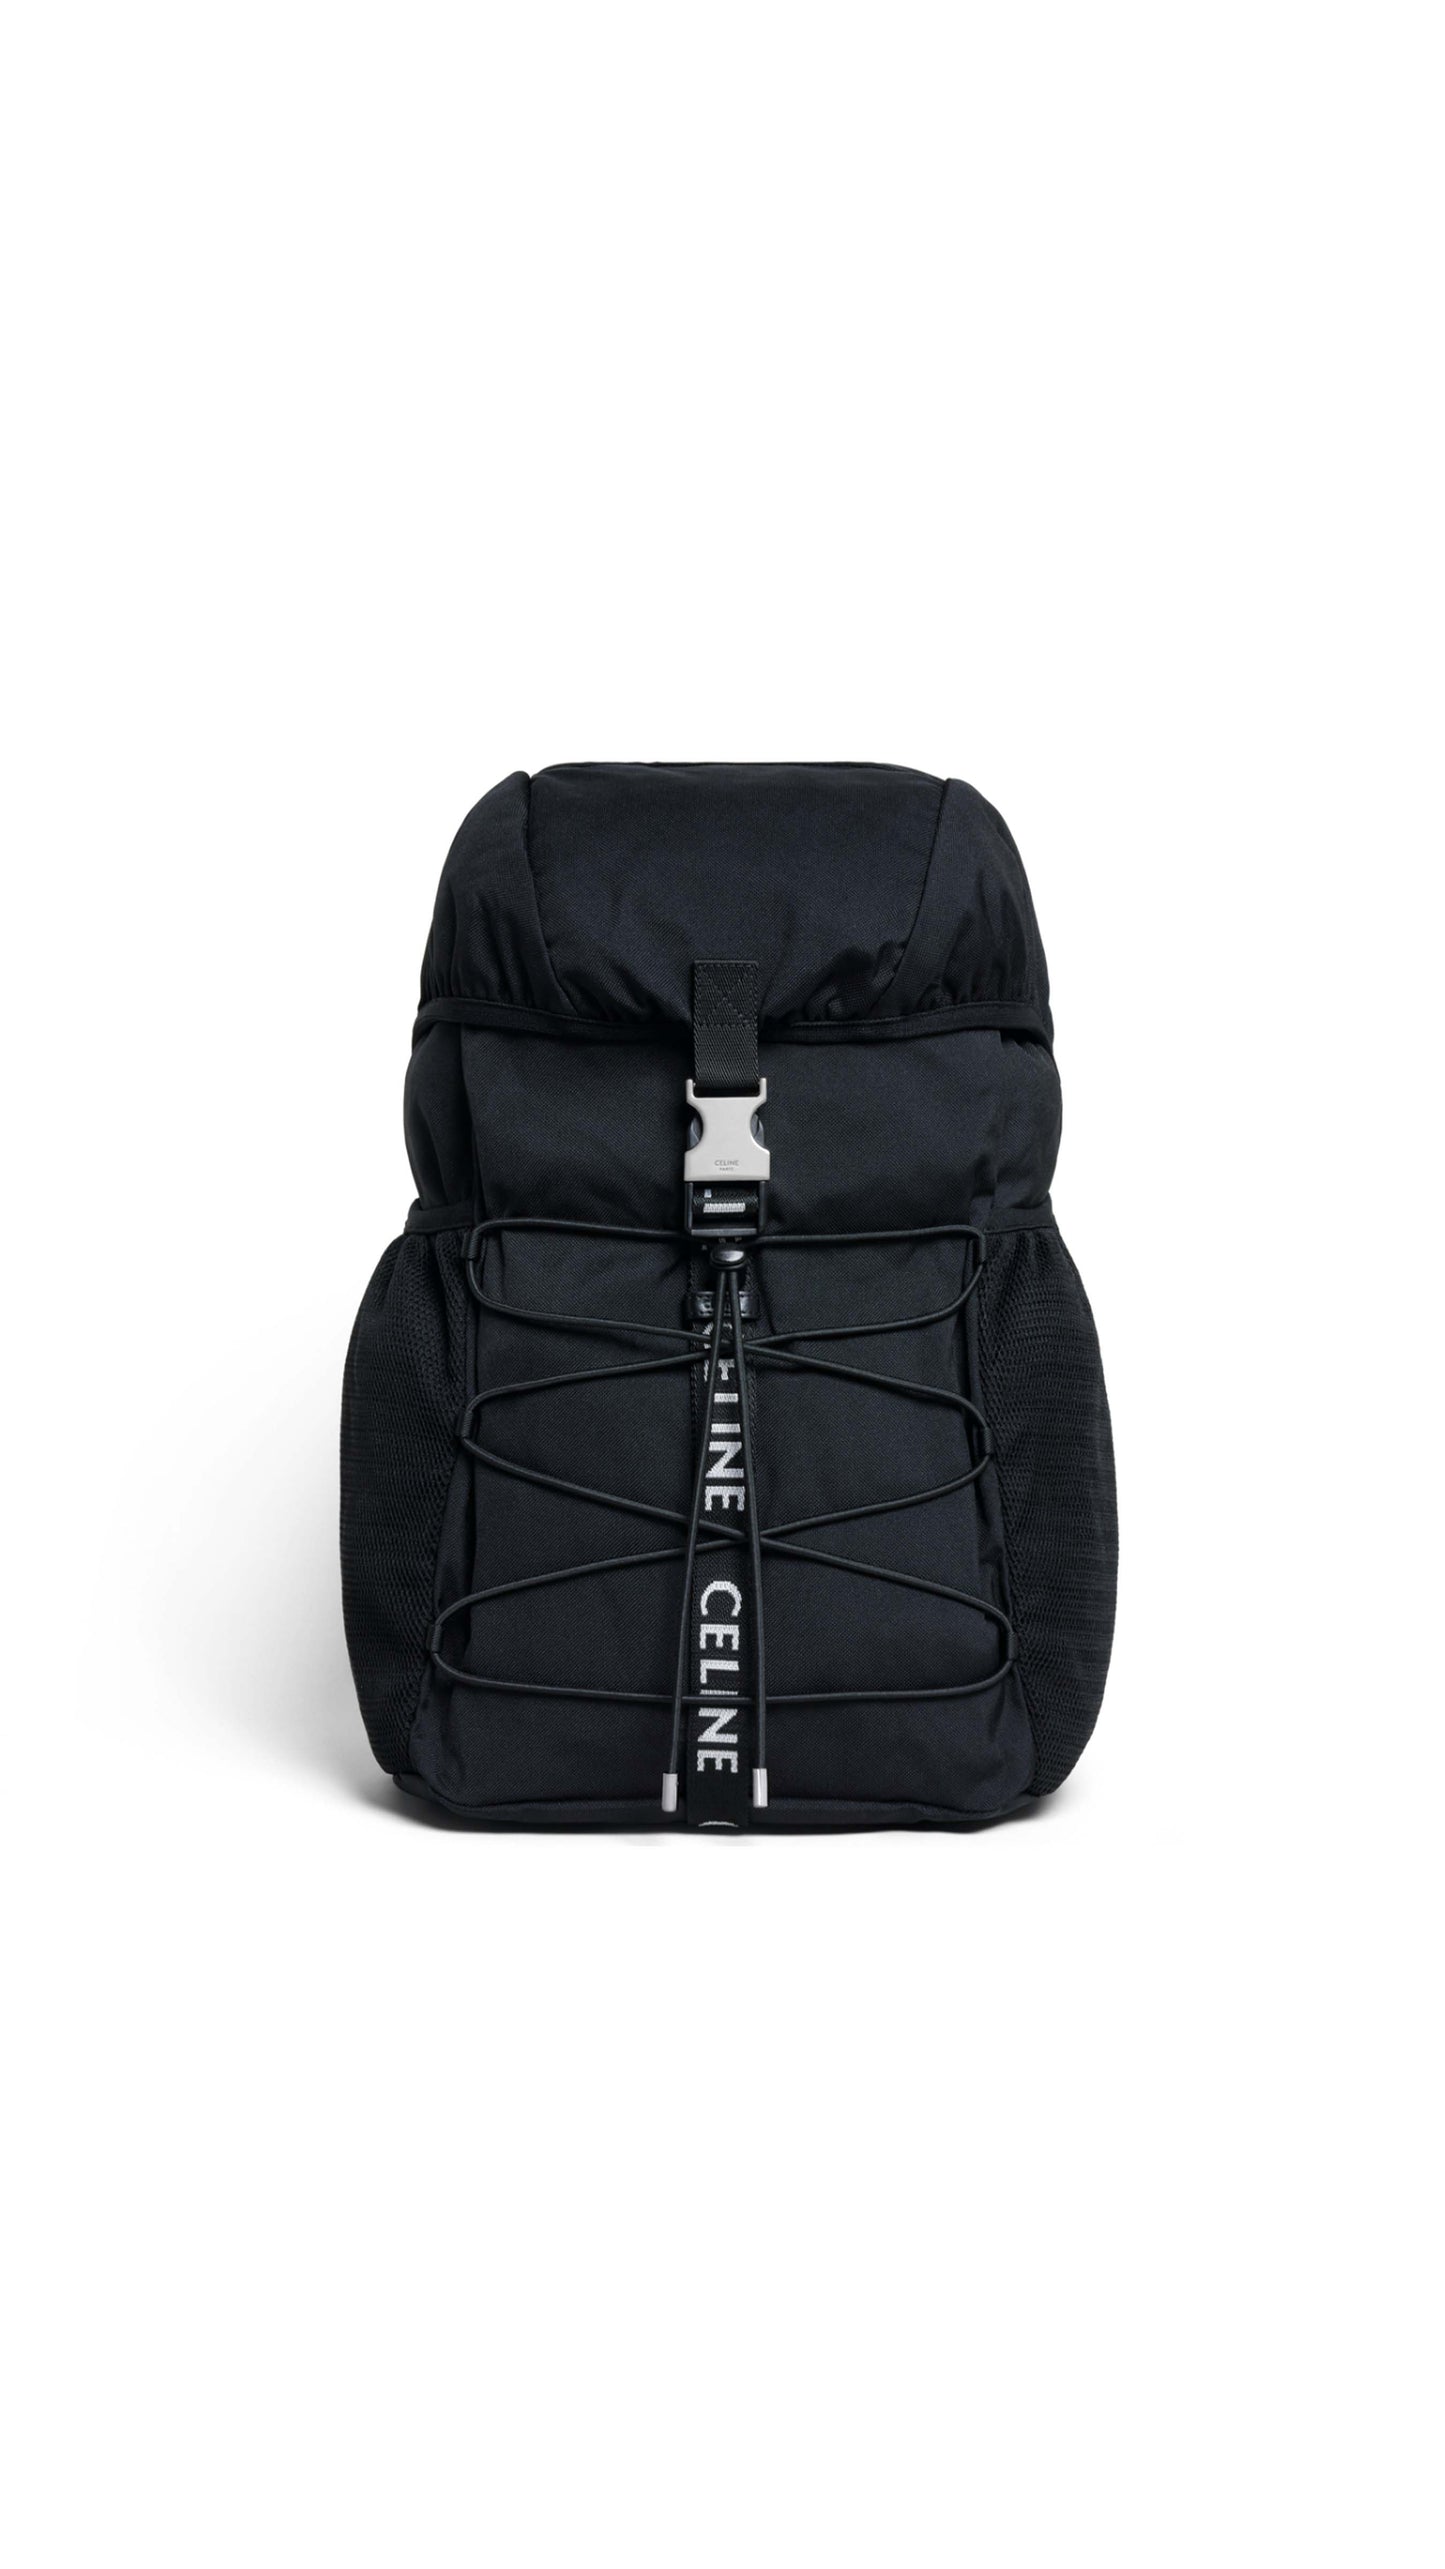 Medium Backpack Trekking In Nylon - Black